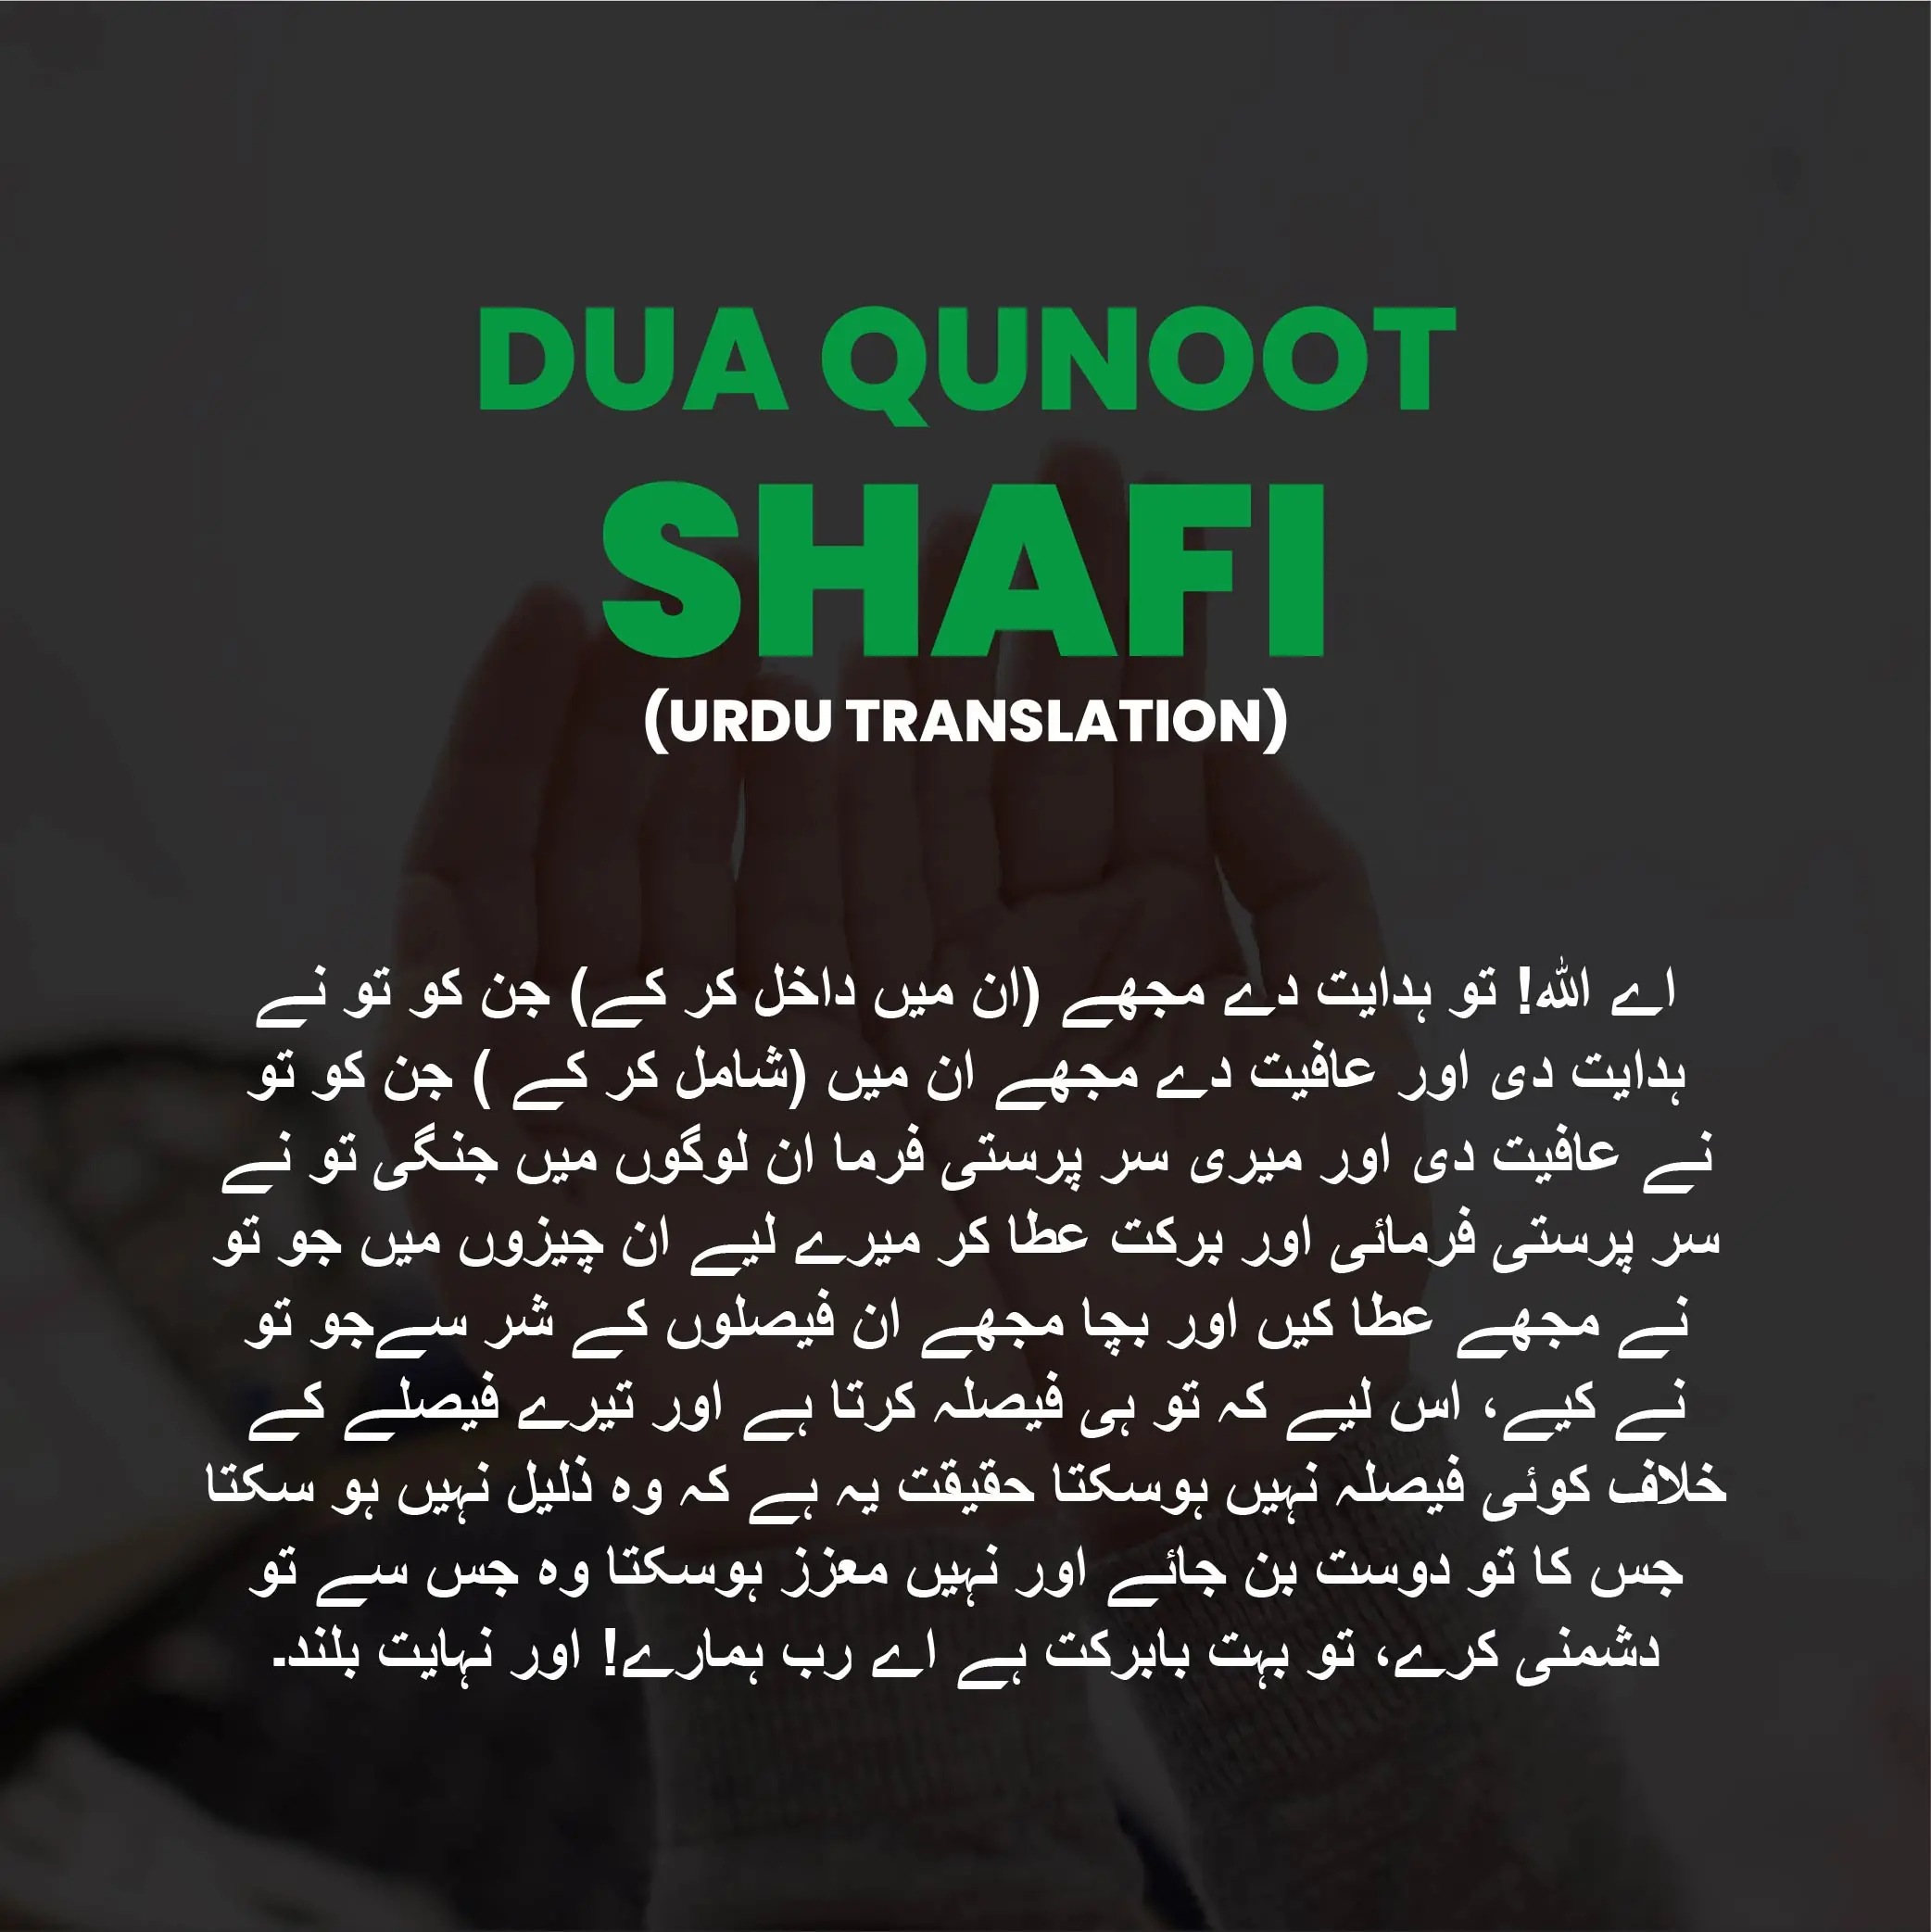 dua e qunoot translation urdu